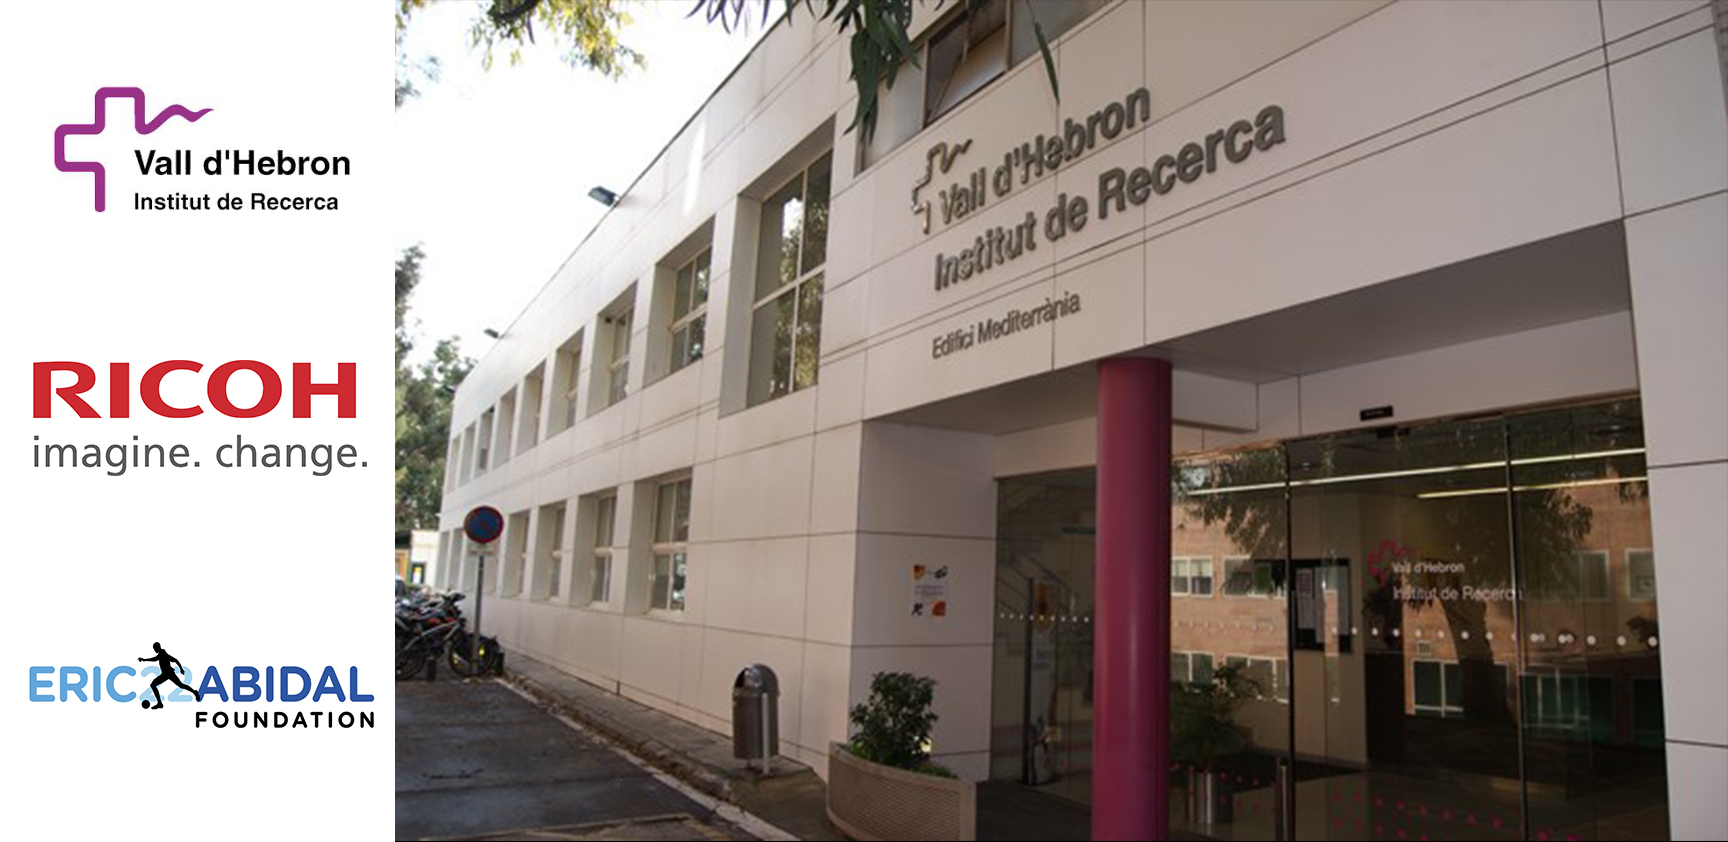 The EAF & Ricoh España collaborate with Vall d’Hebrón Hospital pediatrics